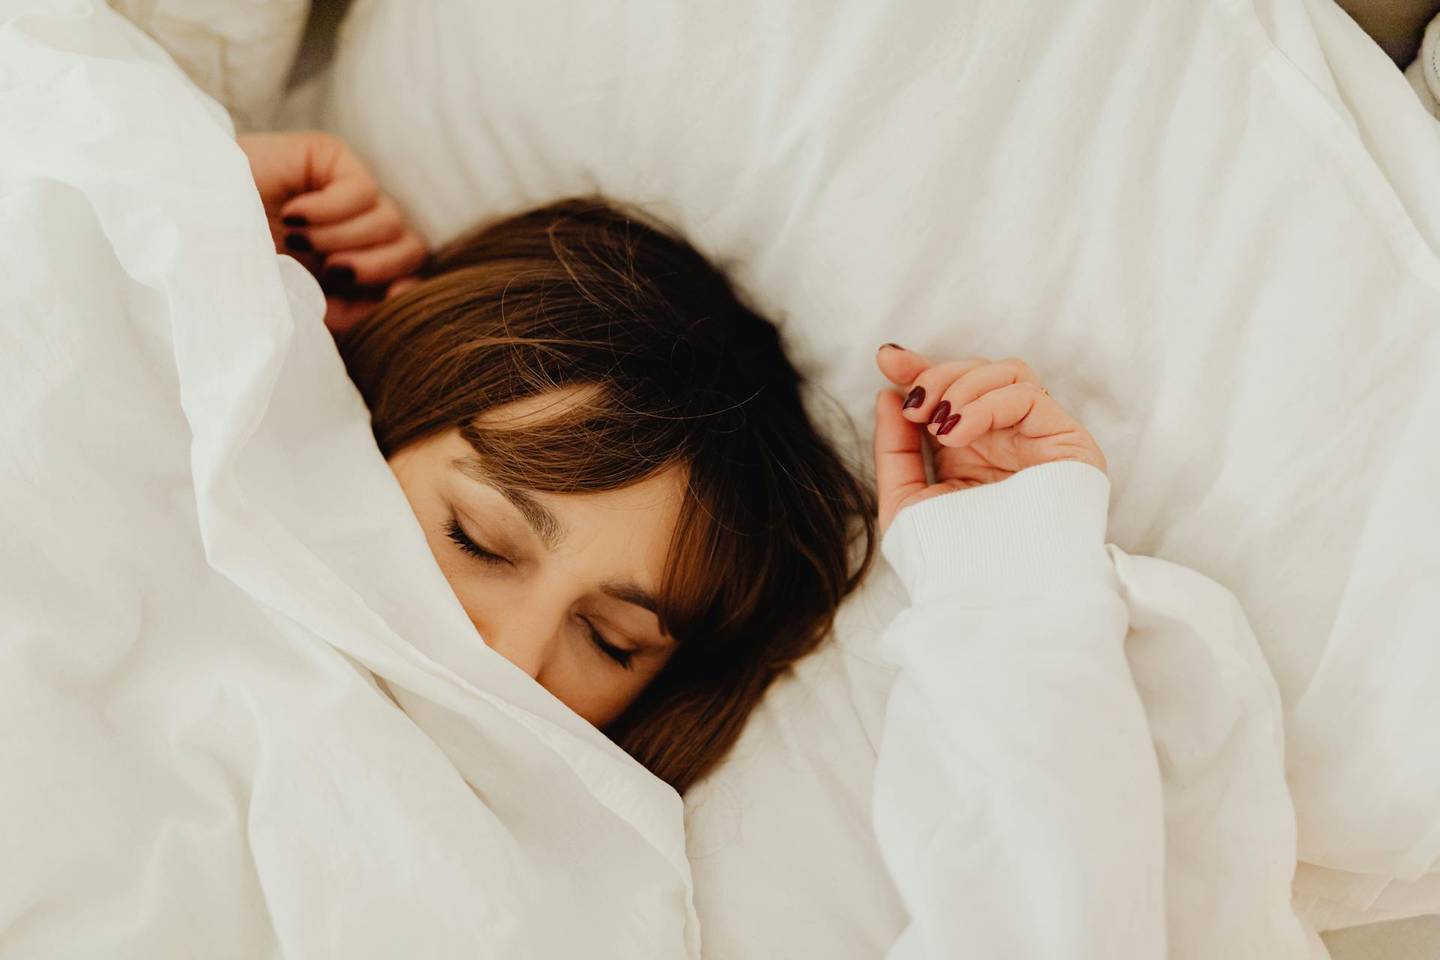 Mantener una buena posición en la cama puede ayudar a relajar el cuerpo y mejorar la calidad del descanso nocturno.